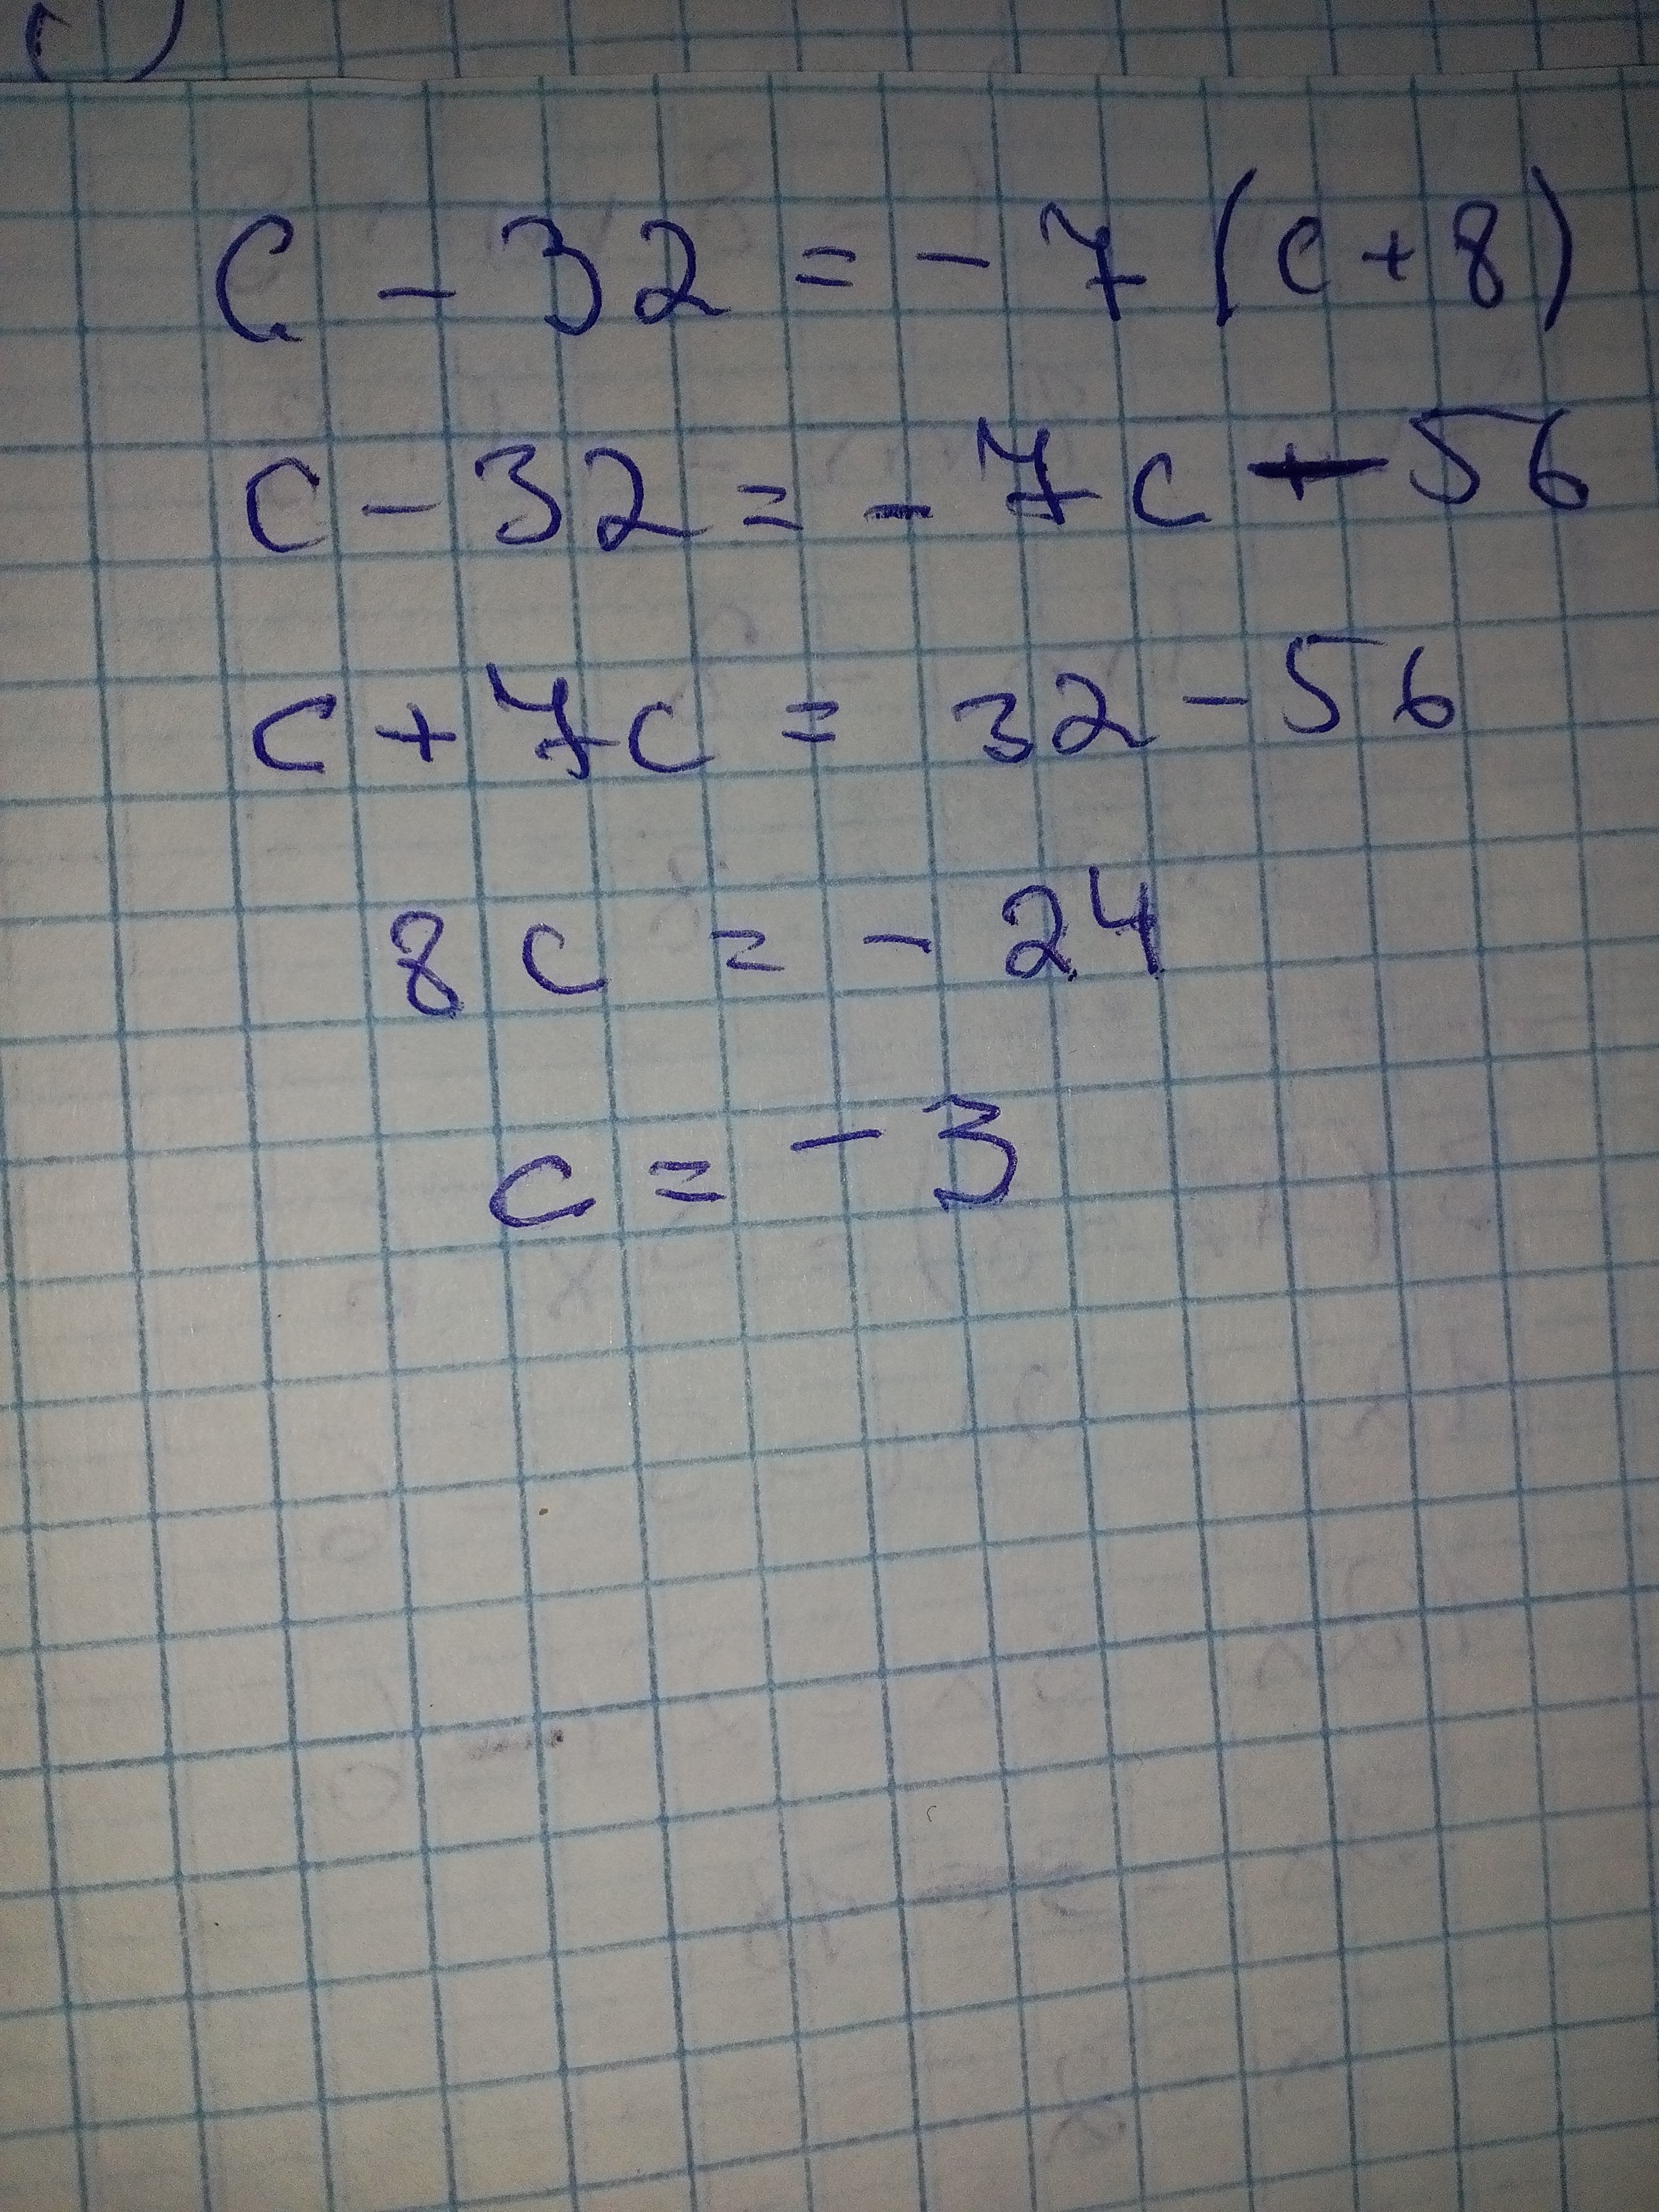 A 10 c 10 решение. 8x_3-x-4+6x_3+7x+8 решение. 6,8-(3,7-X)=8,8 уравнение. Решение. 7а+8а решение. Решить уравнение (2 c 2+c+6) (c+5).